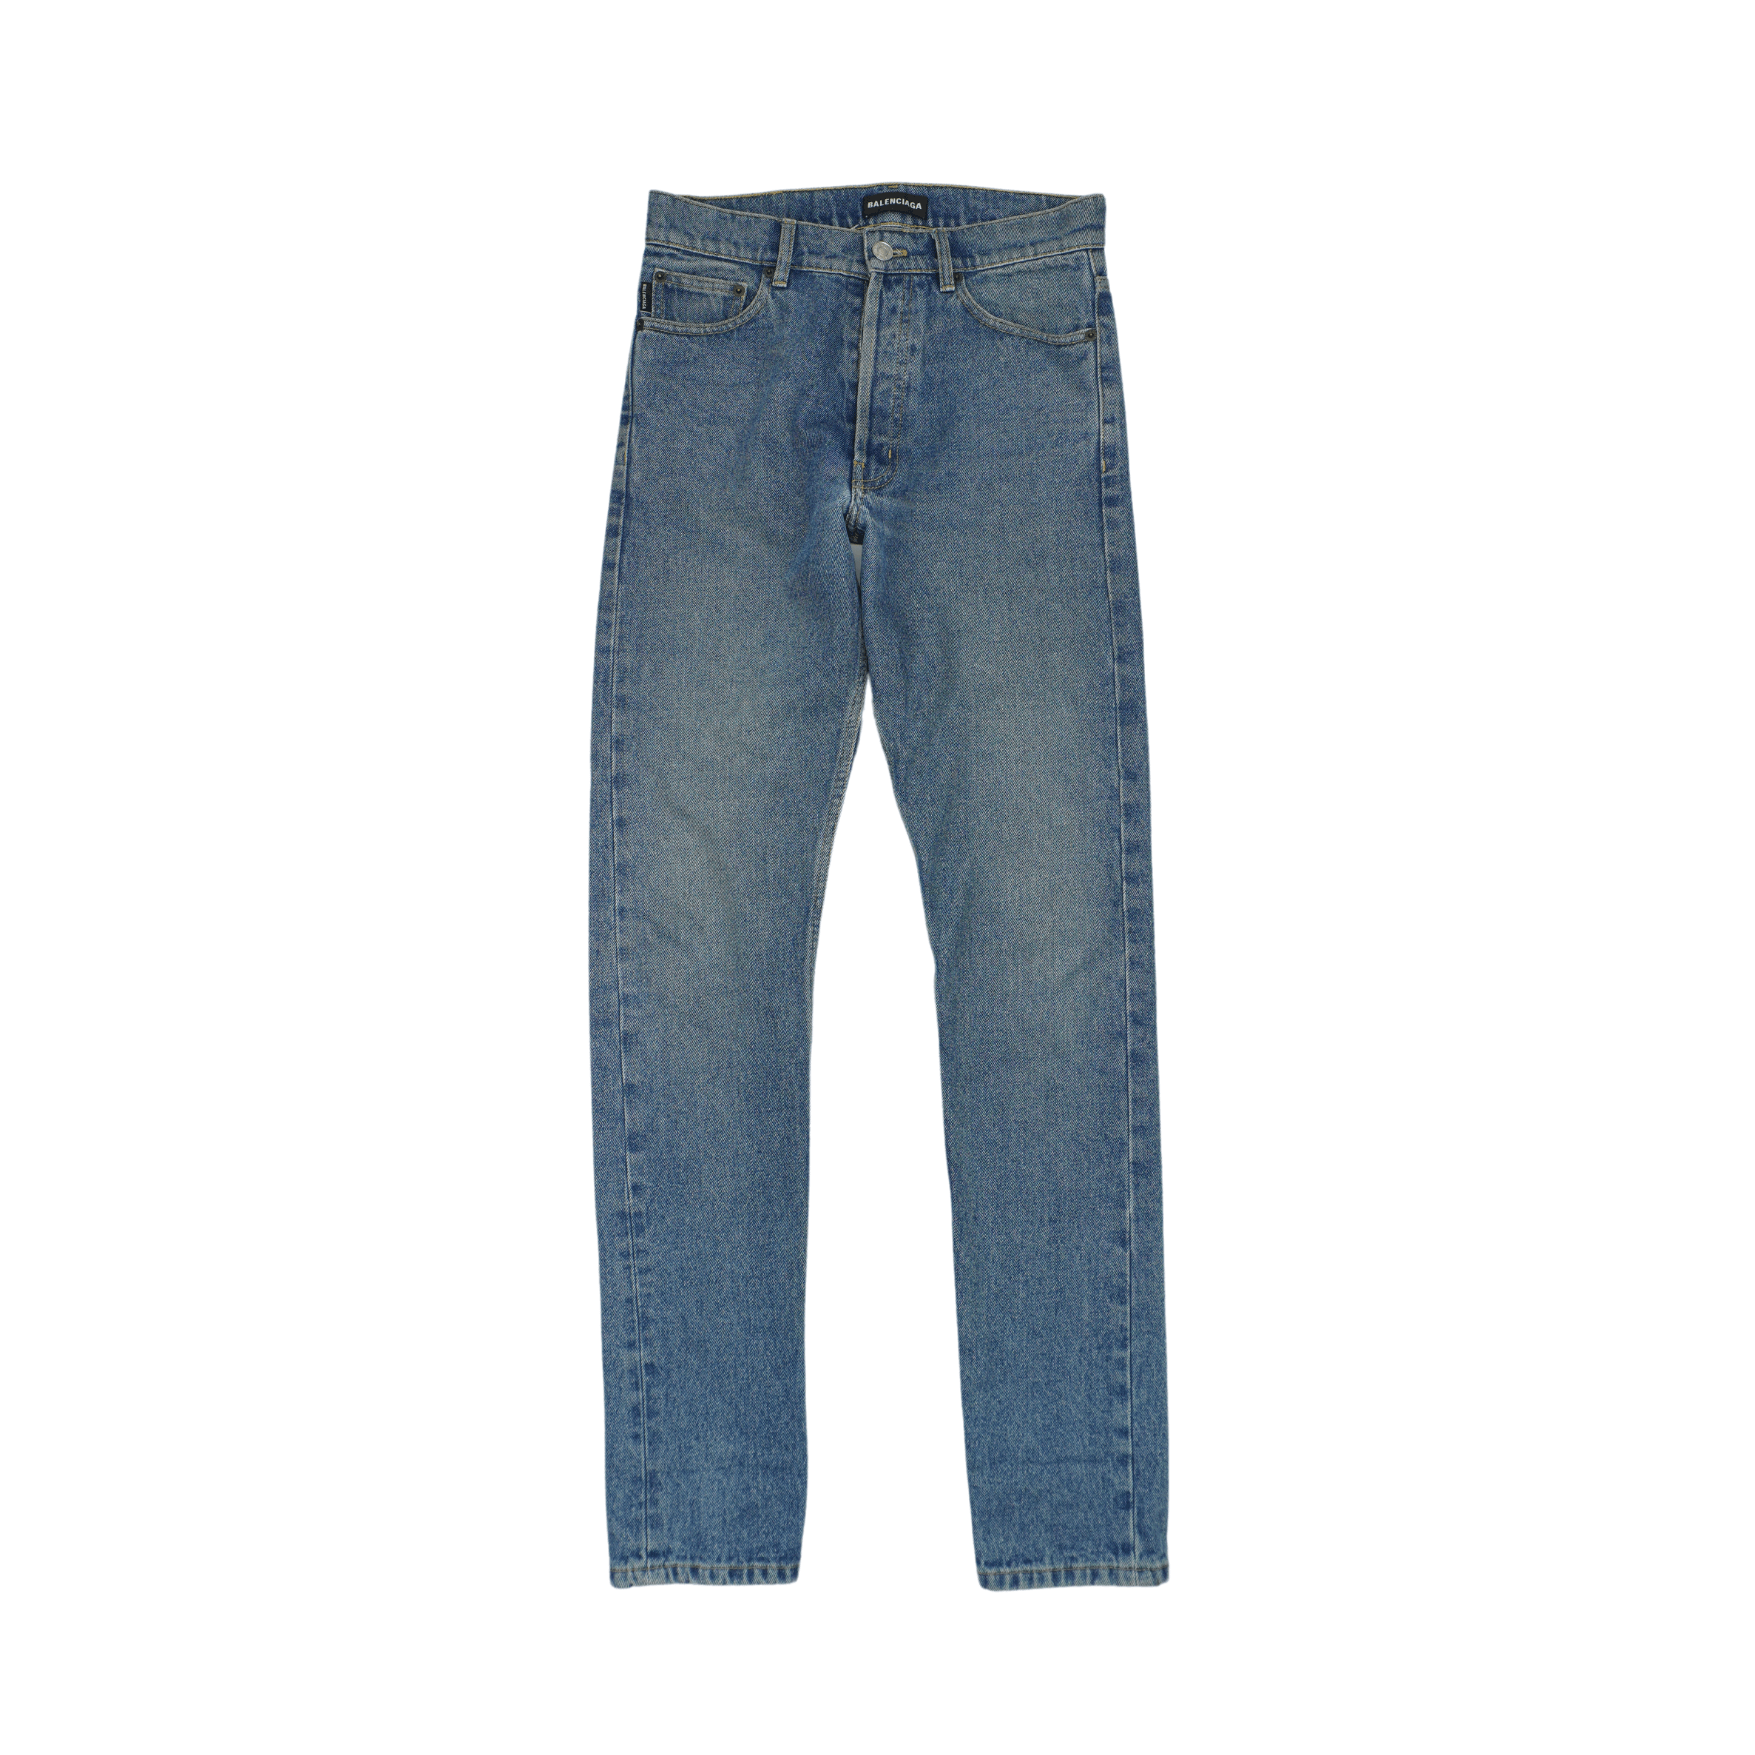 Balenciaga Jeans - Men's 29 - Fashionably Yours